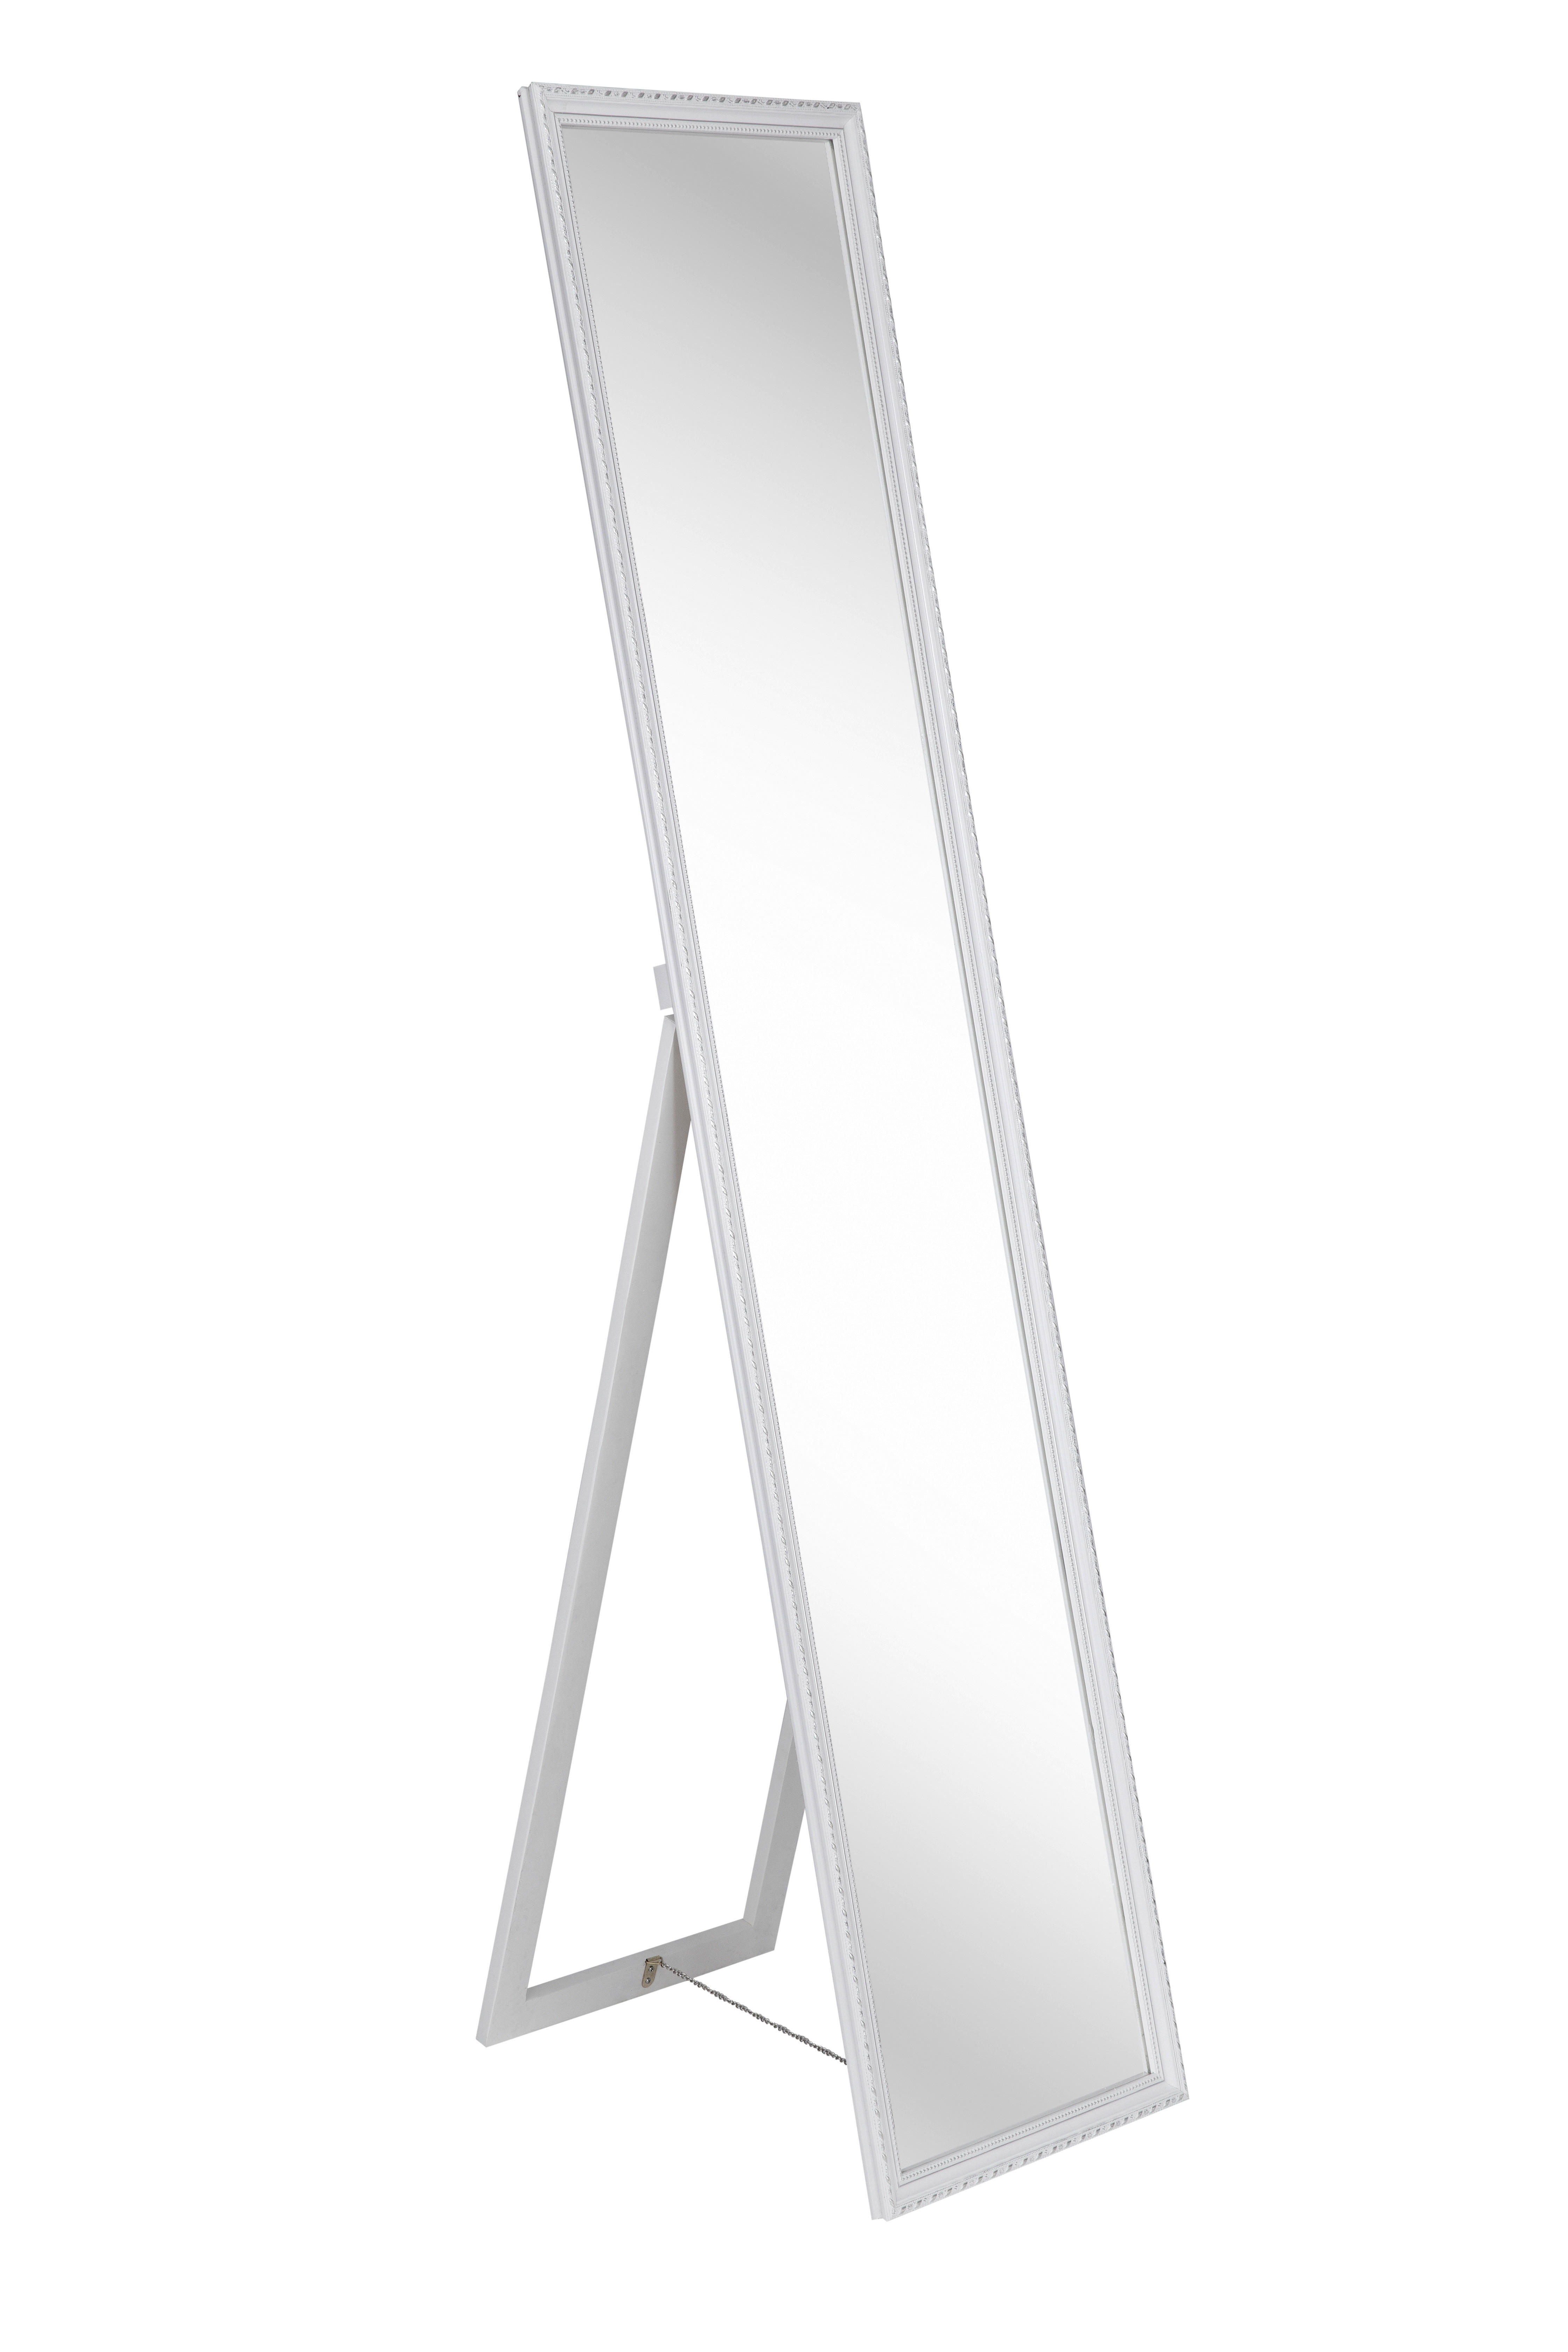 STANDSPIEGEL 34/160/3,8 cm  - Weiß, LIFESTYLE, Glas/Holz (34/160/3,8cm) - Carryhome